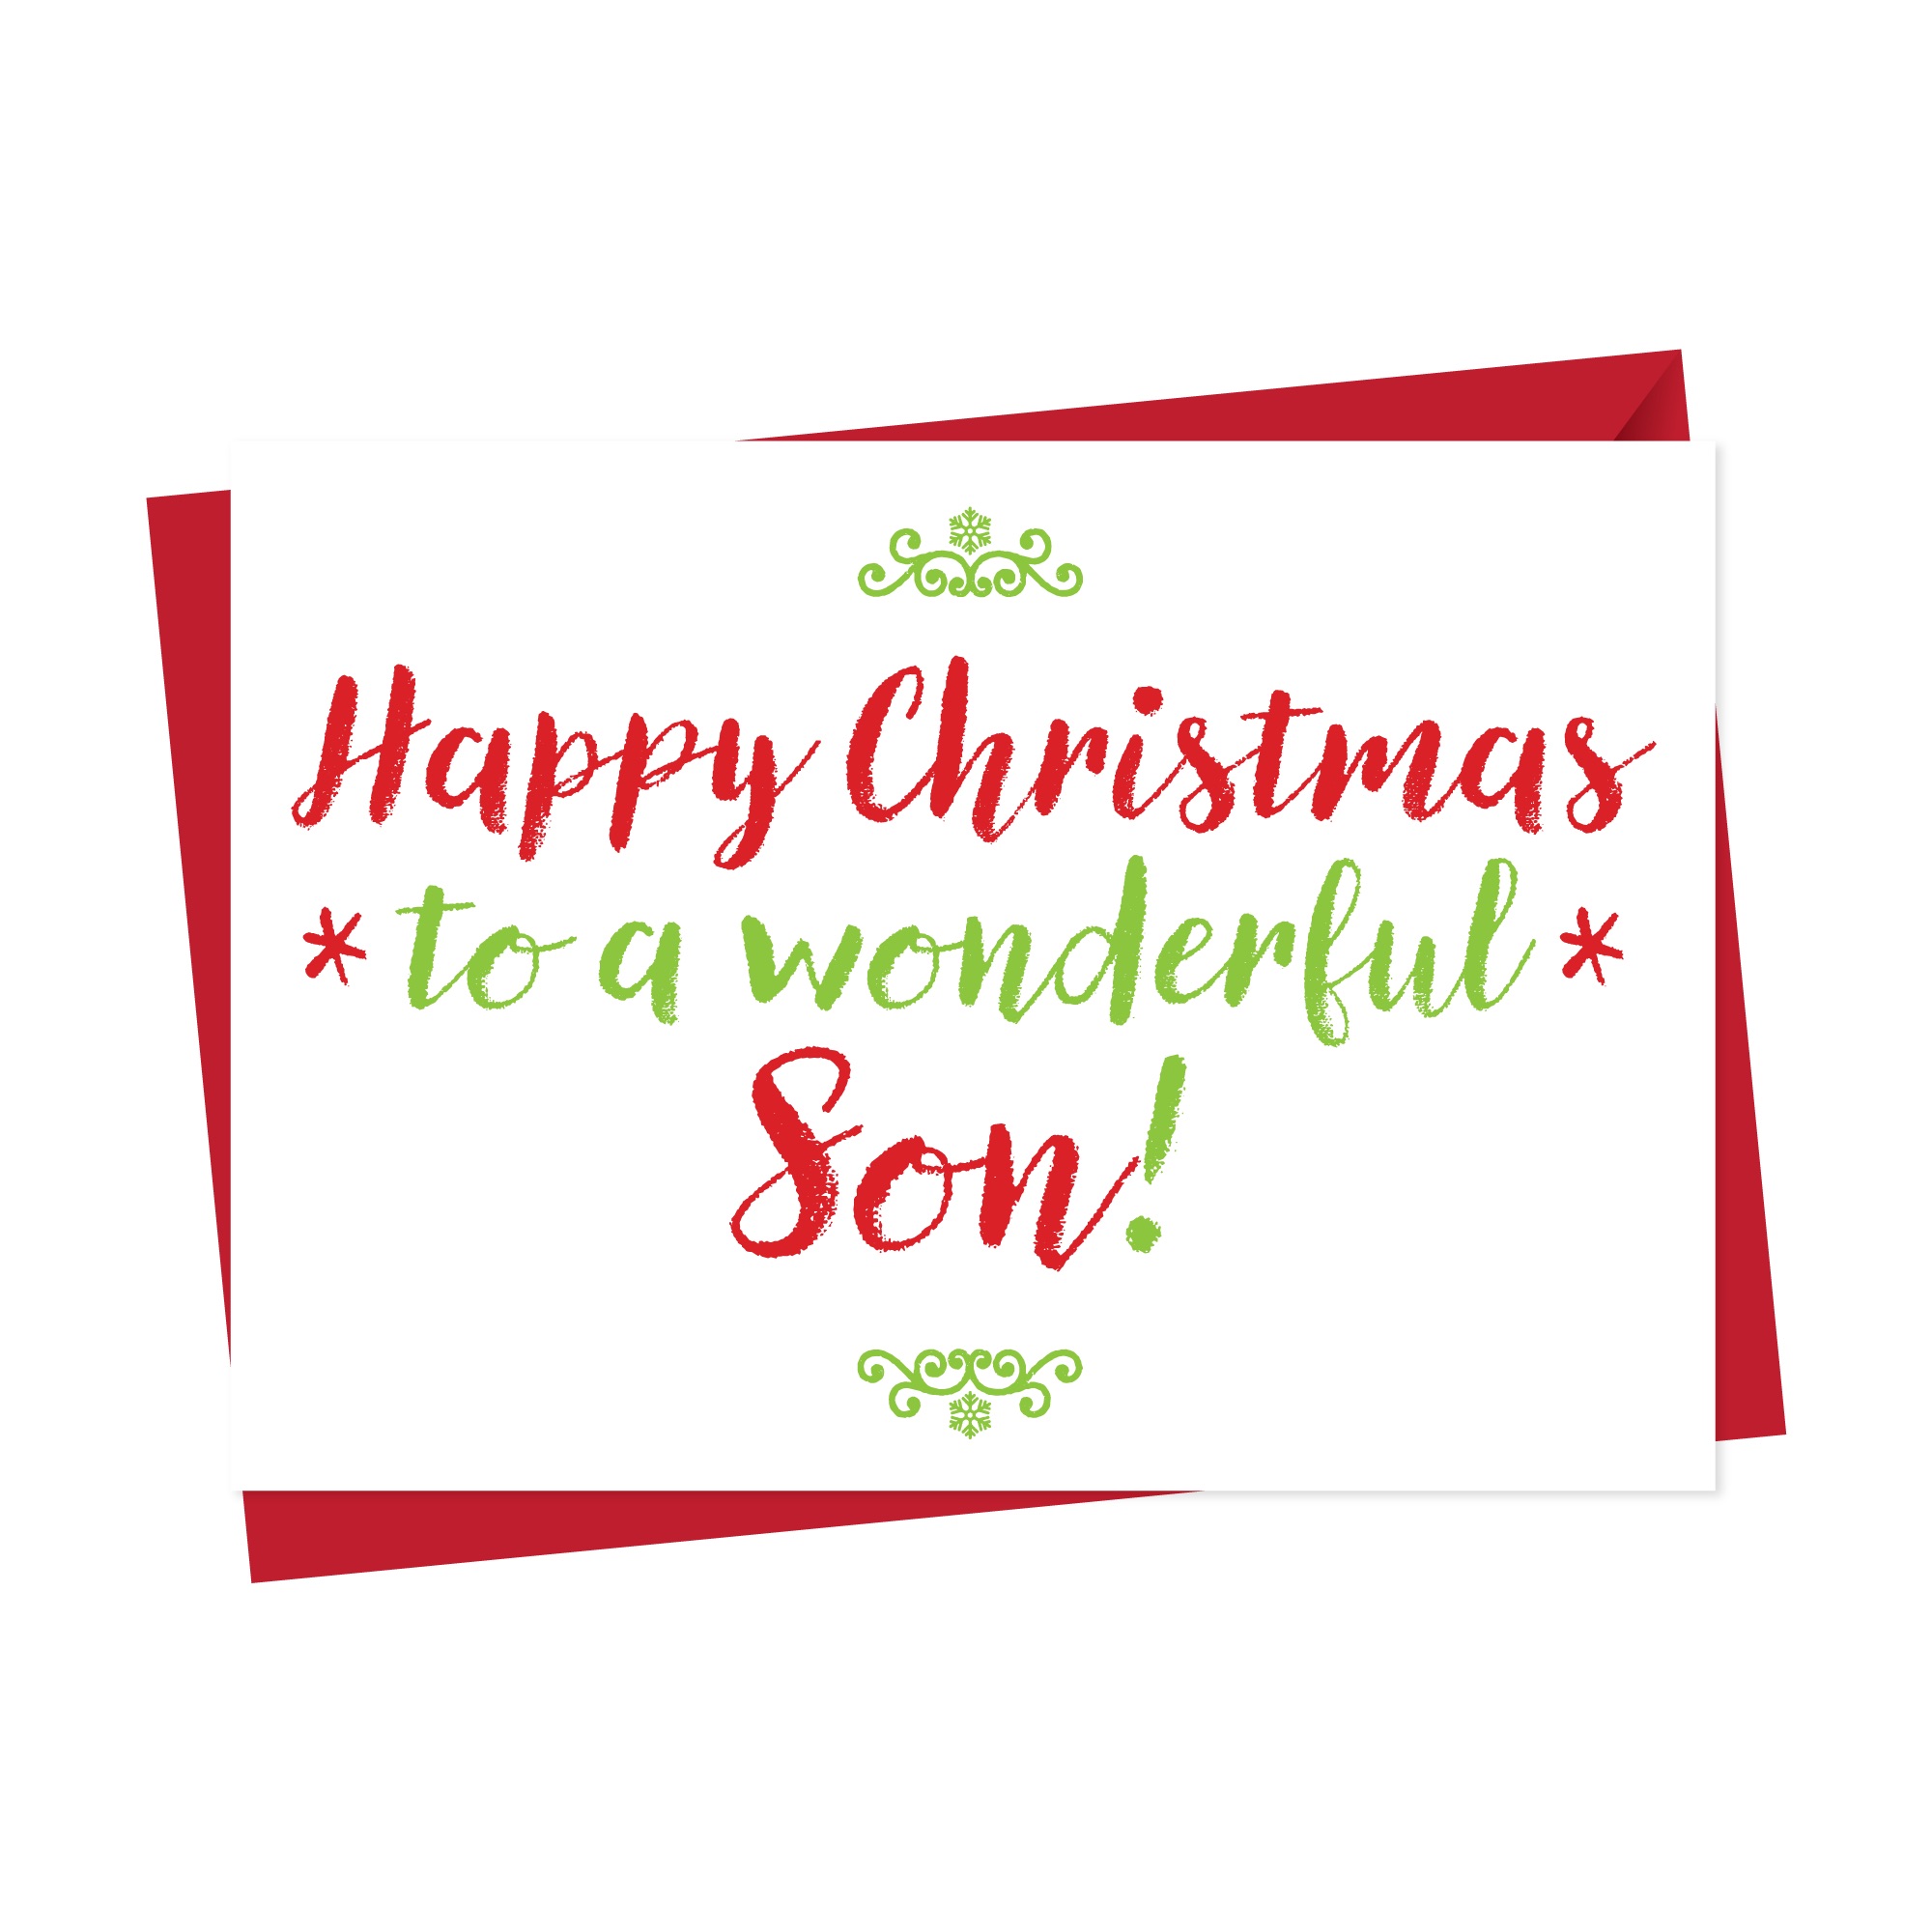 Christmas Card For Wonderful Son